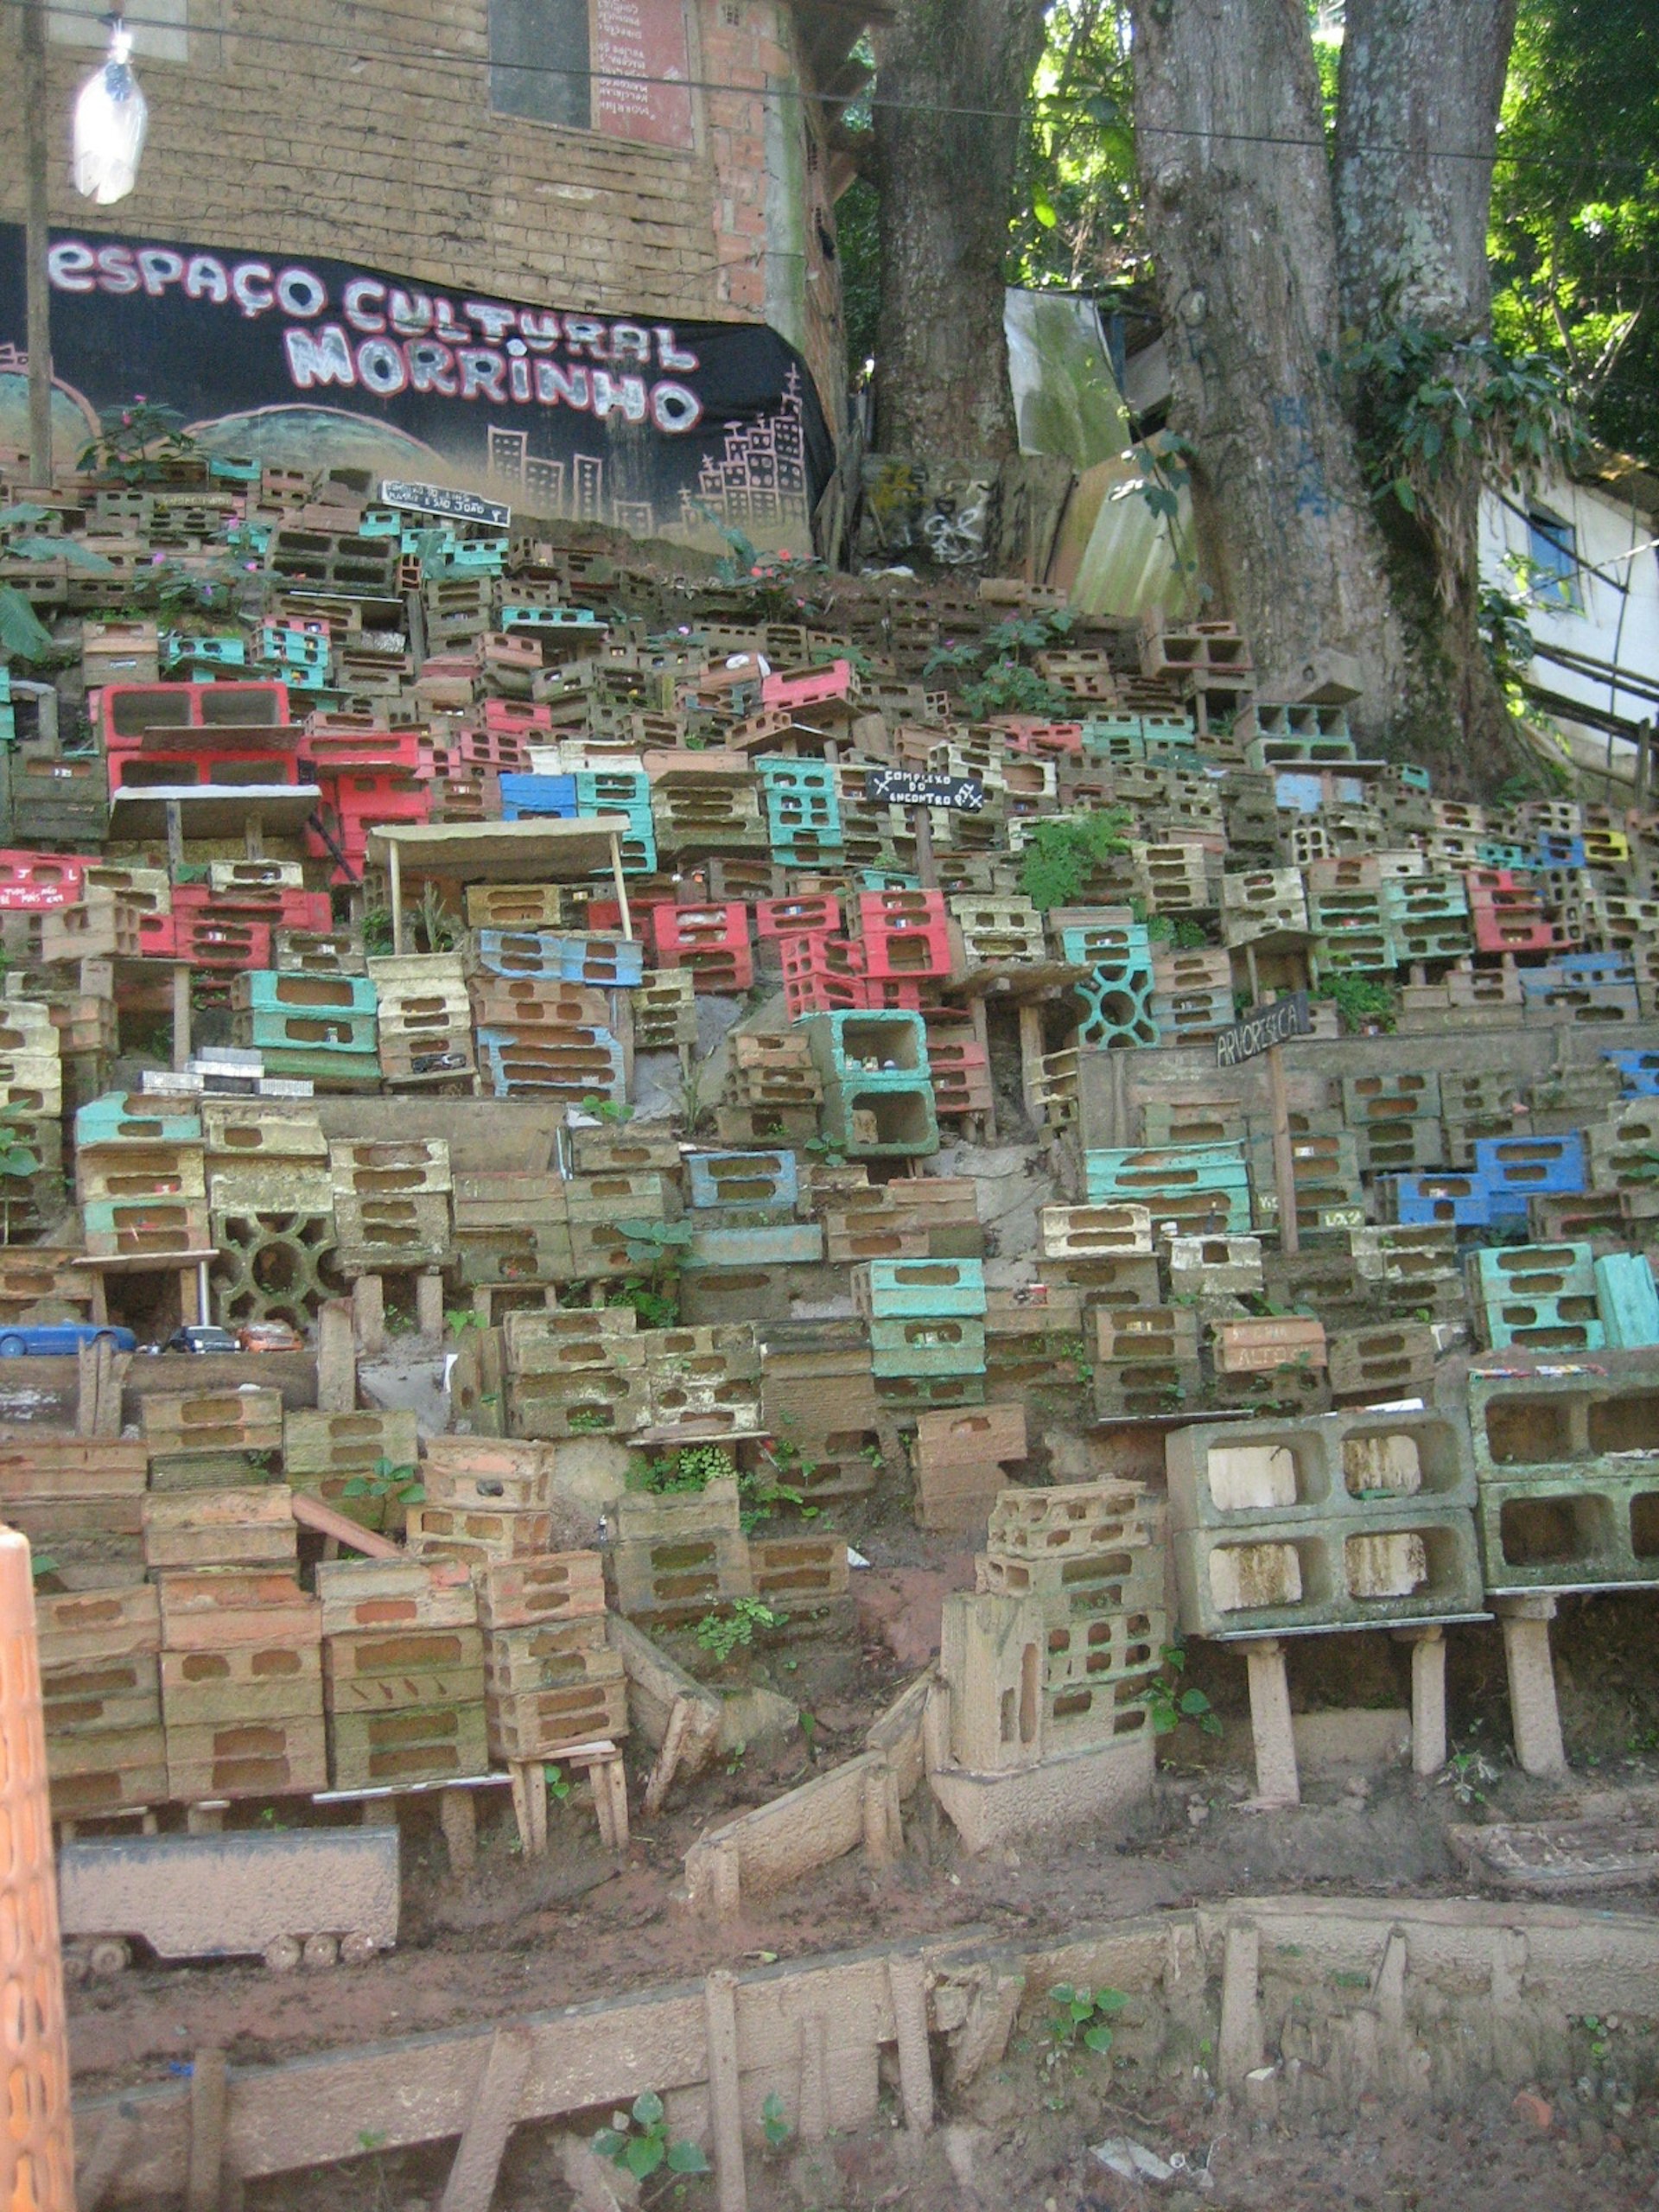 The Morrinho project in Favela Mare, Rio de Janeiro